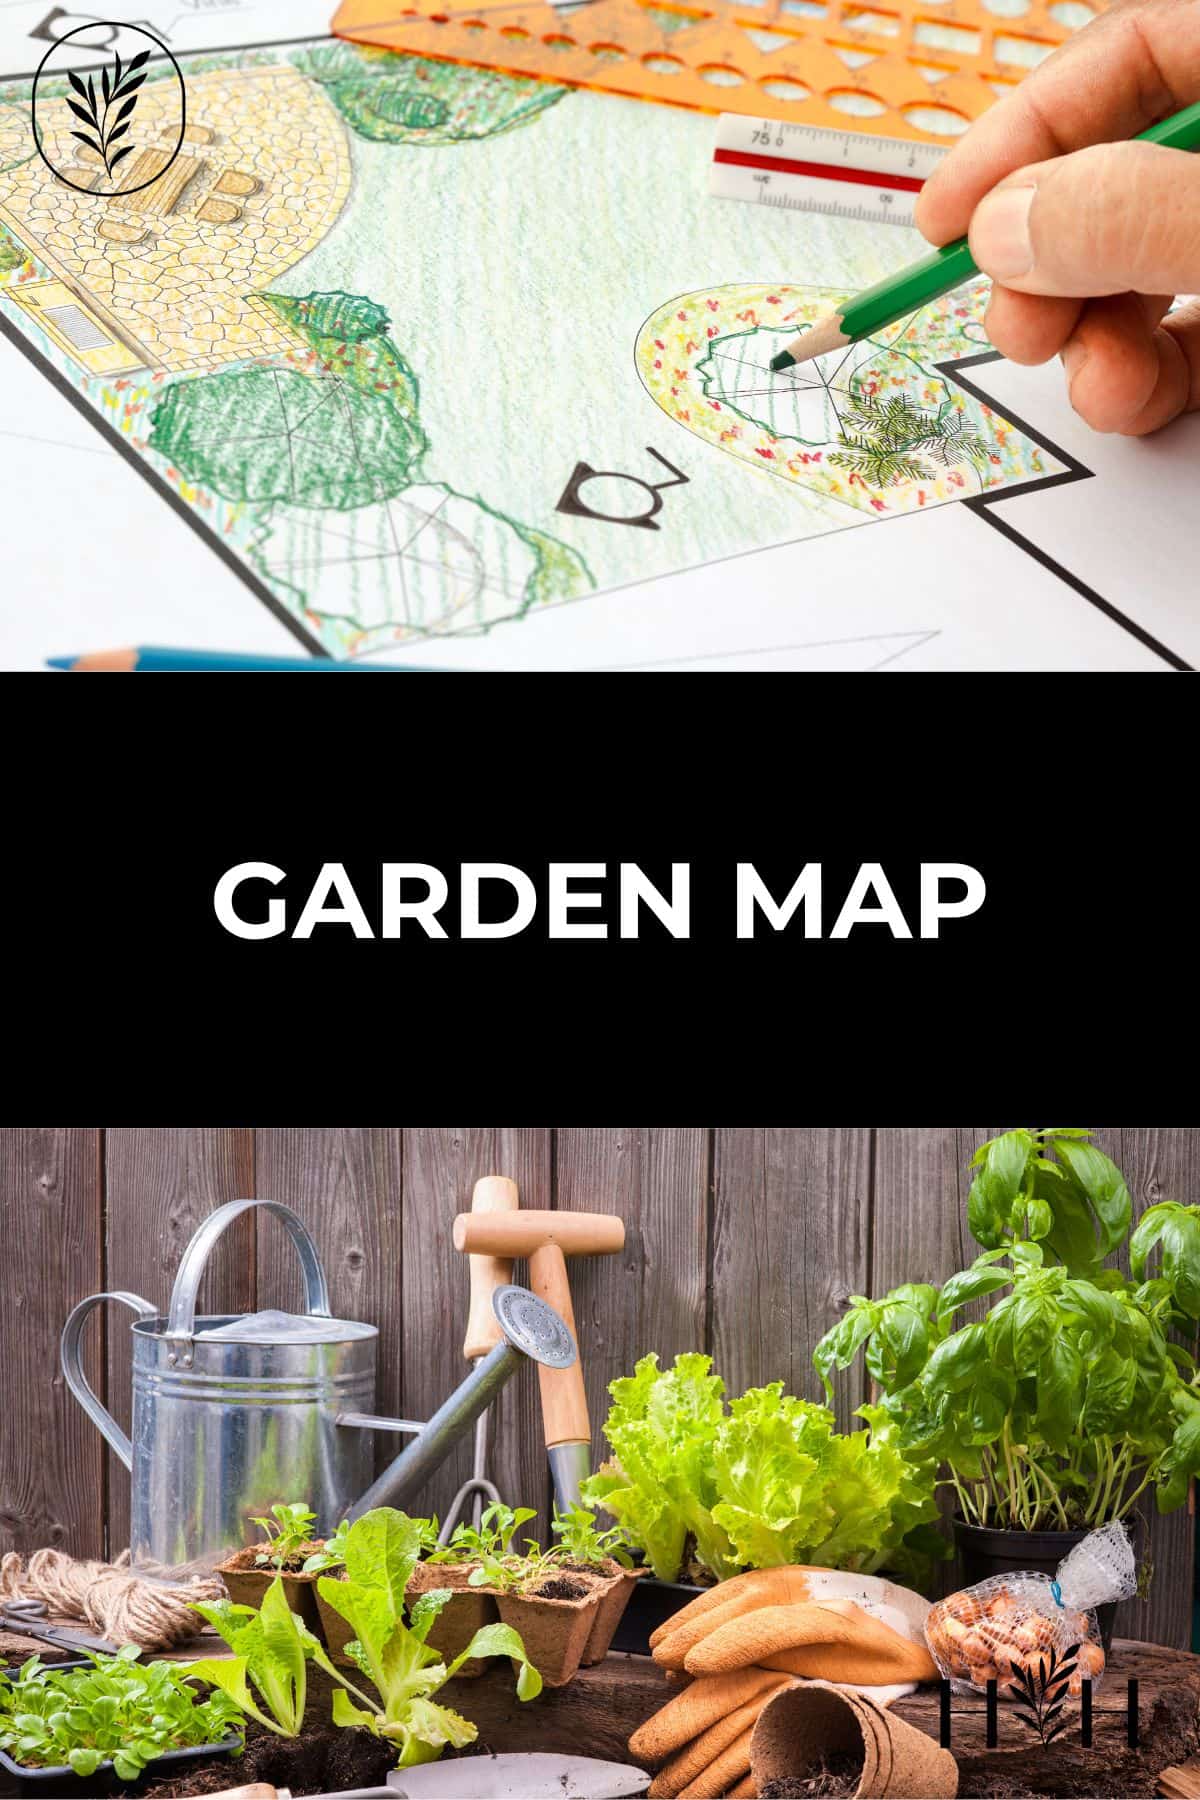 Garden map via @home4theharvest